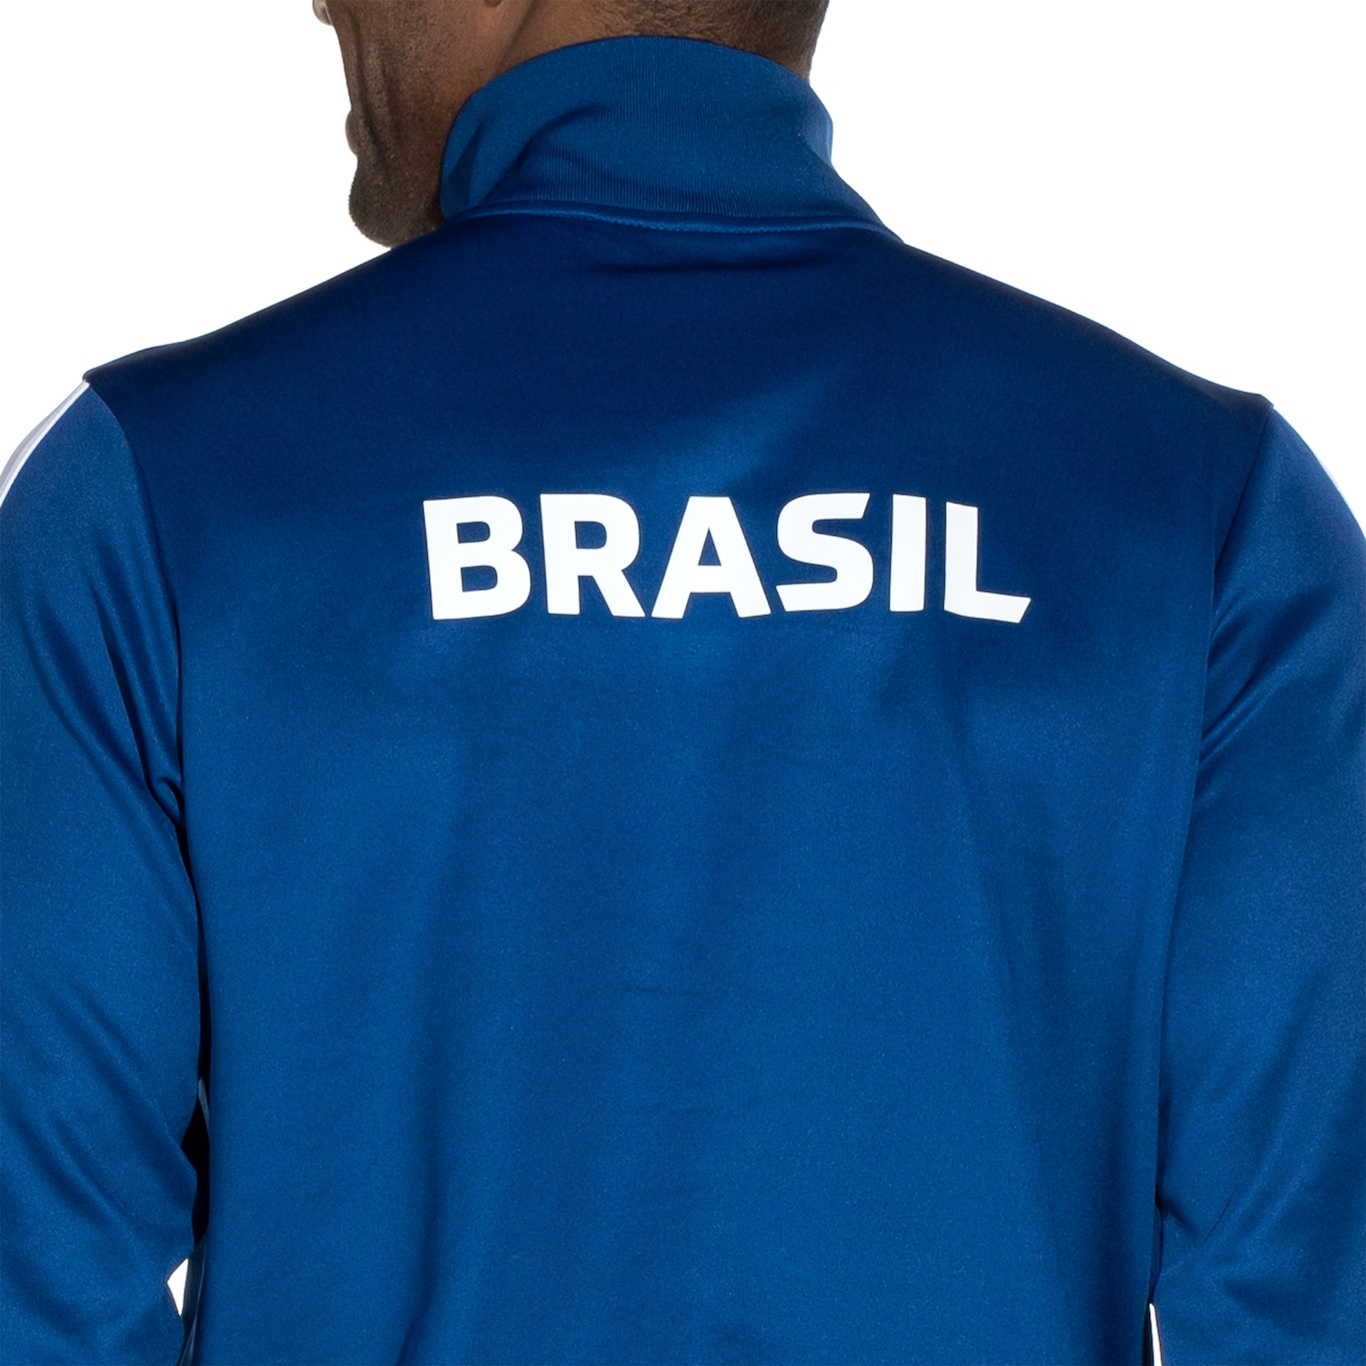 Jaqueta Nike CBF Auth Azul - Compre Agora